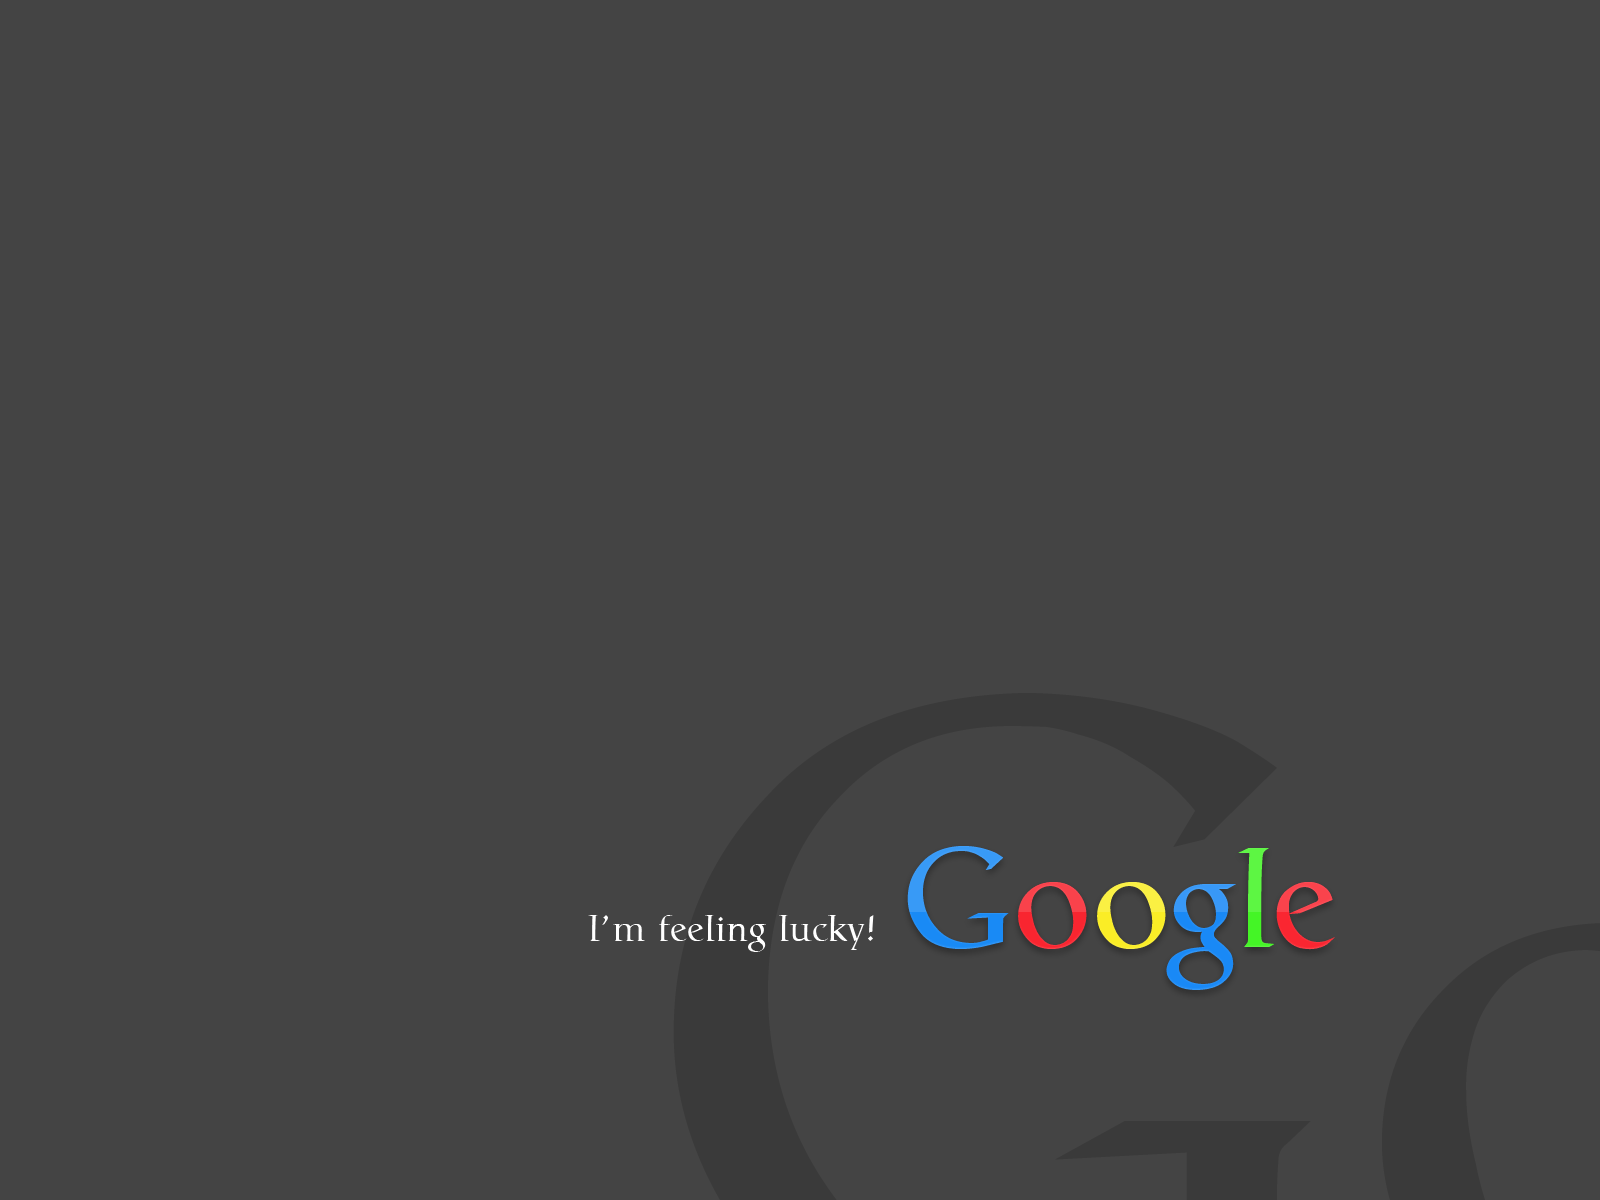 Feeling Lucky Google Image Desktop Wallpaper